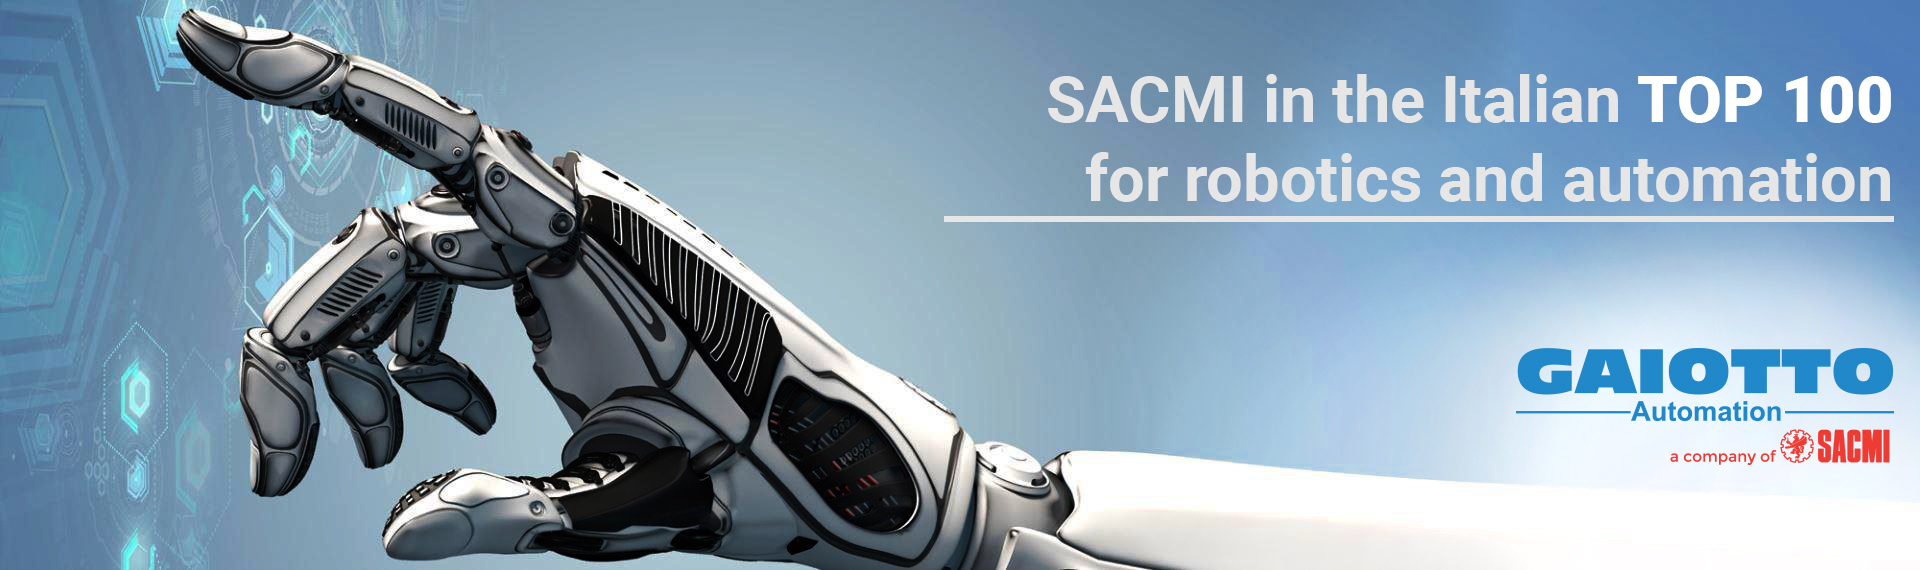 SACMI entre las 100 mejores empresas italianas de robótica y automatización